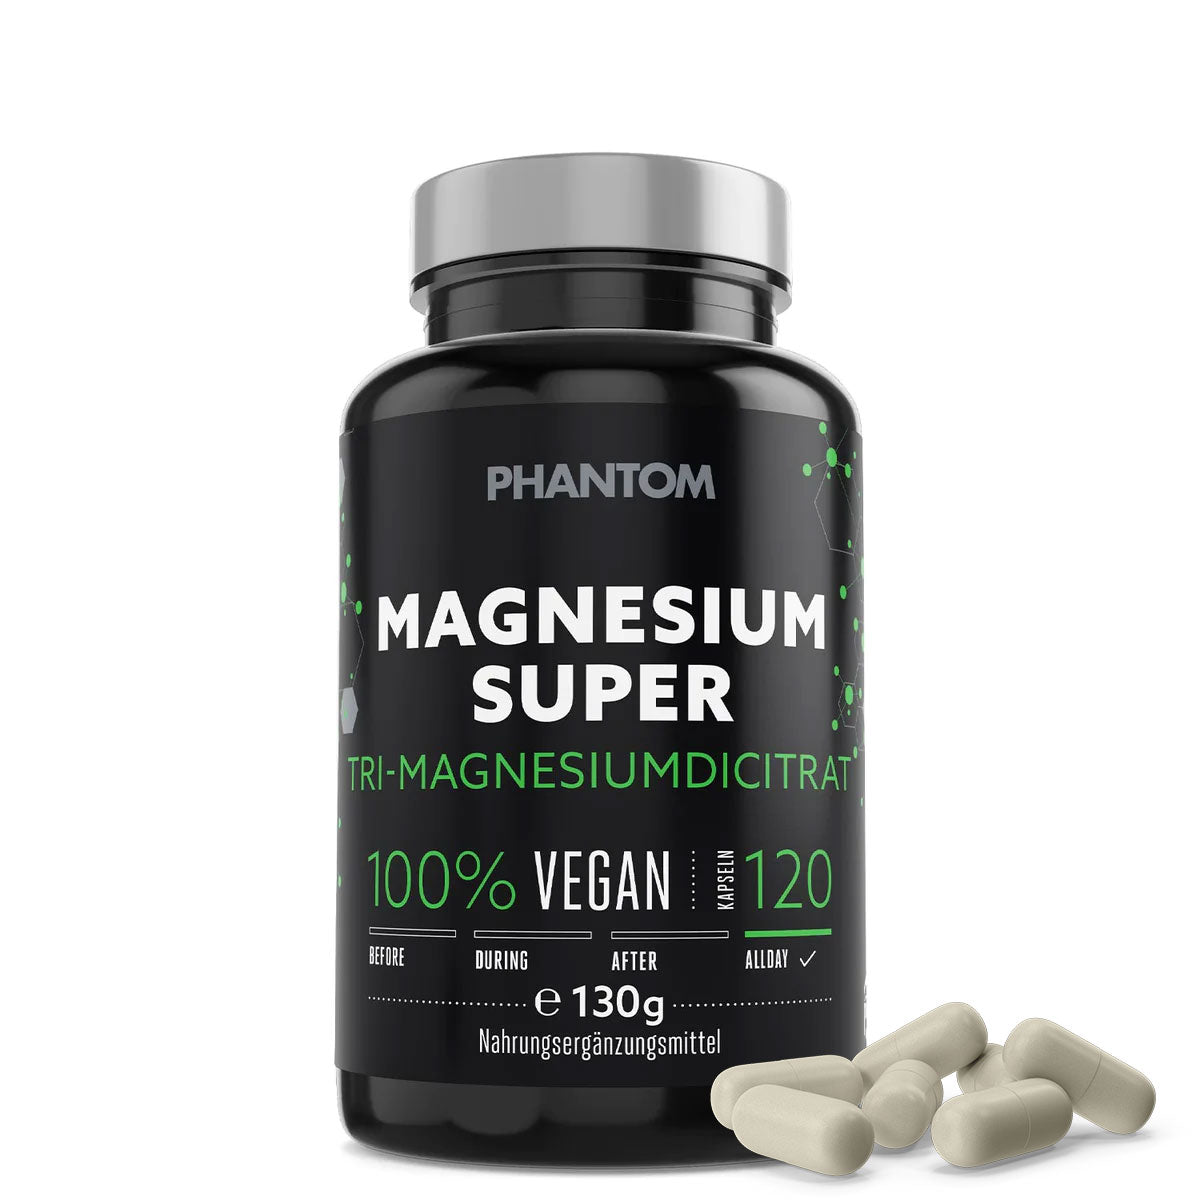 Kapsule Phantom Magnesium Super pre lepšiu regeneráciu v bojových športoch.